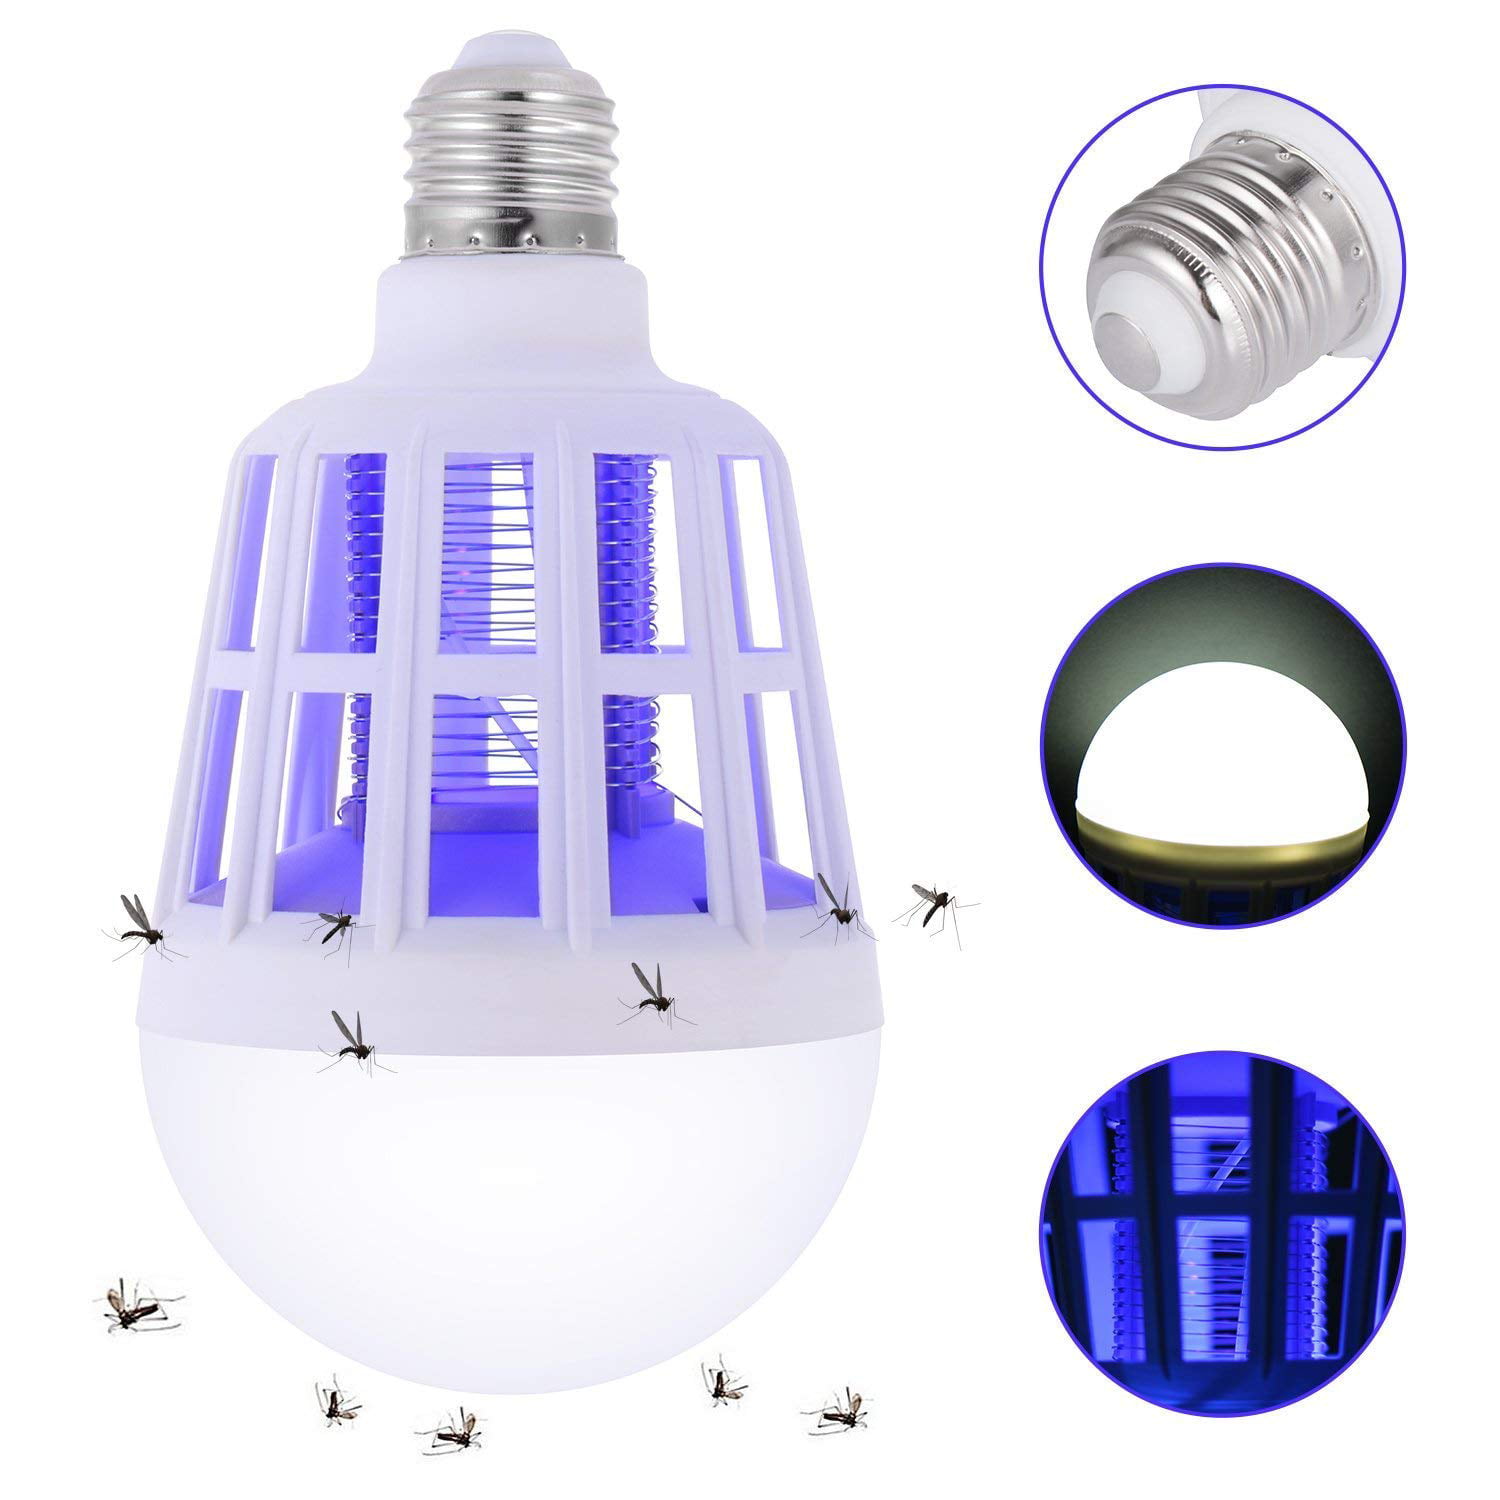 In 1 Bug Zapper Light Bulbs Fits 110V E27 Socket, 2 Pack Mosquito Killer Lamp 